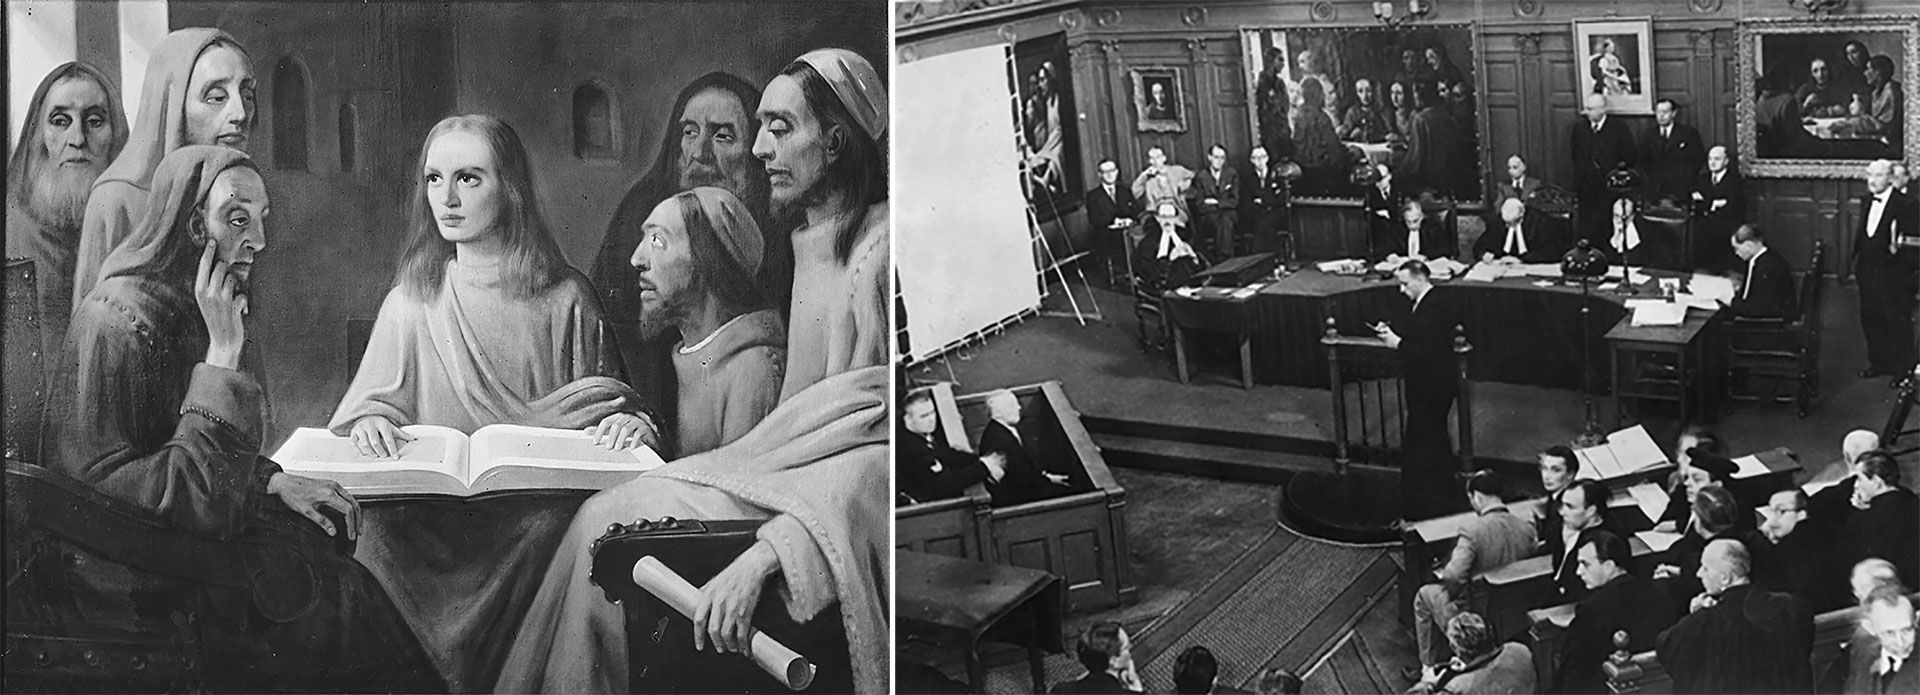 Fotografías de "Jesús entre los doctores" y del juicio a van Meeregen, donde se observan sus falsificaciones desplegadas en la sala 